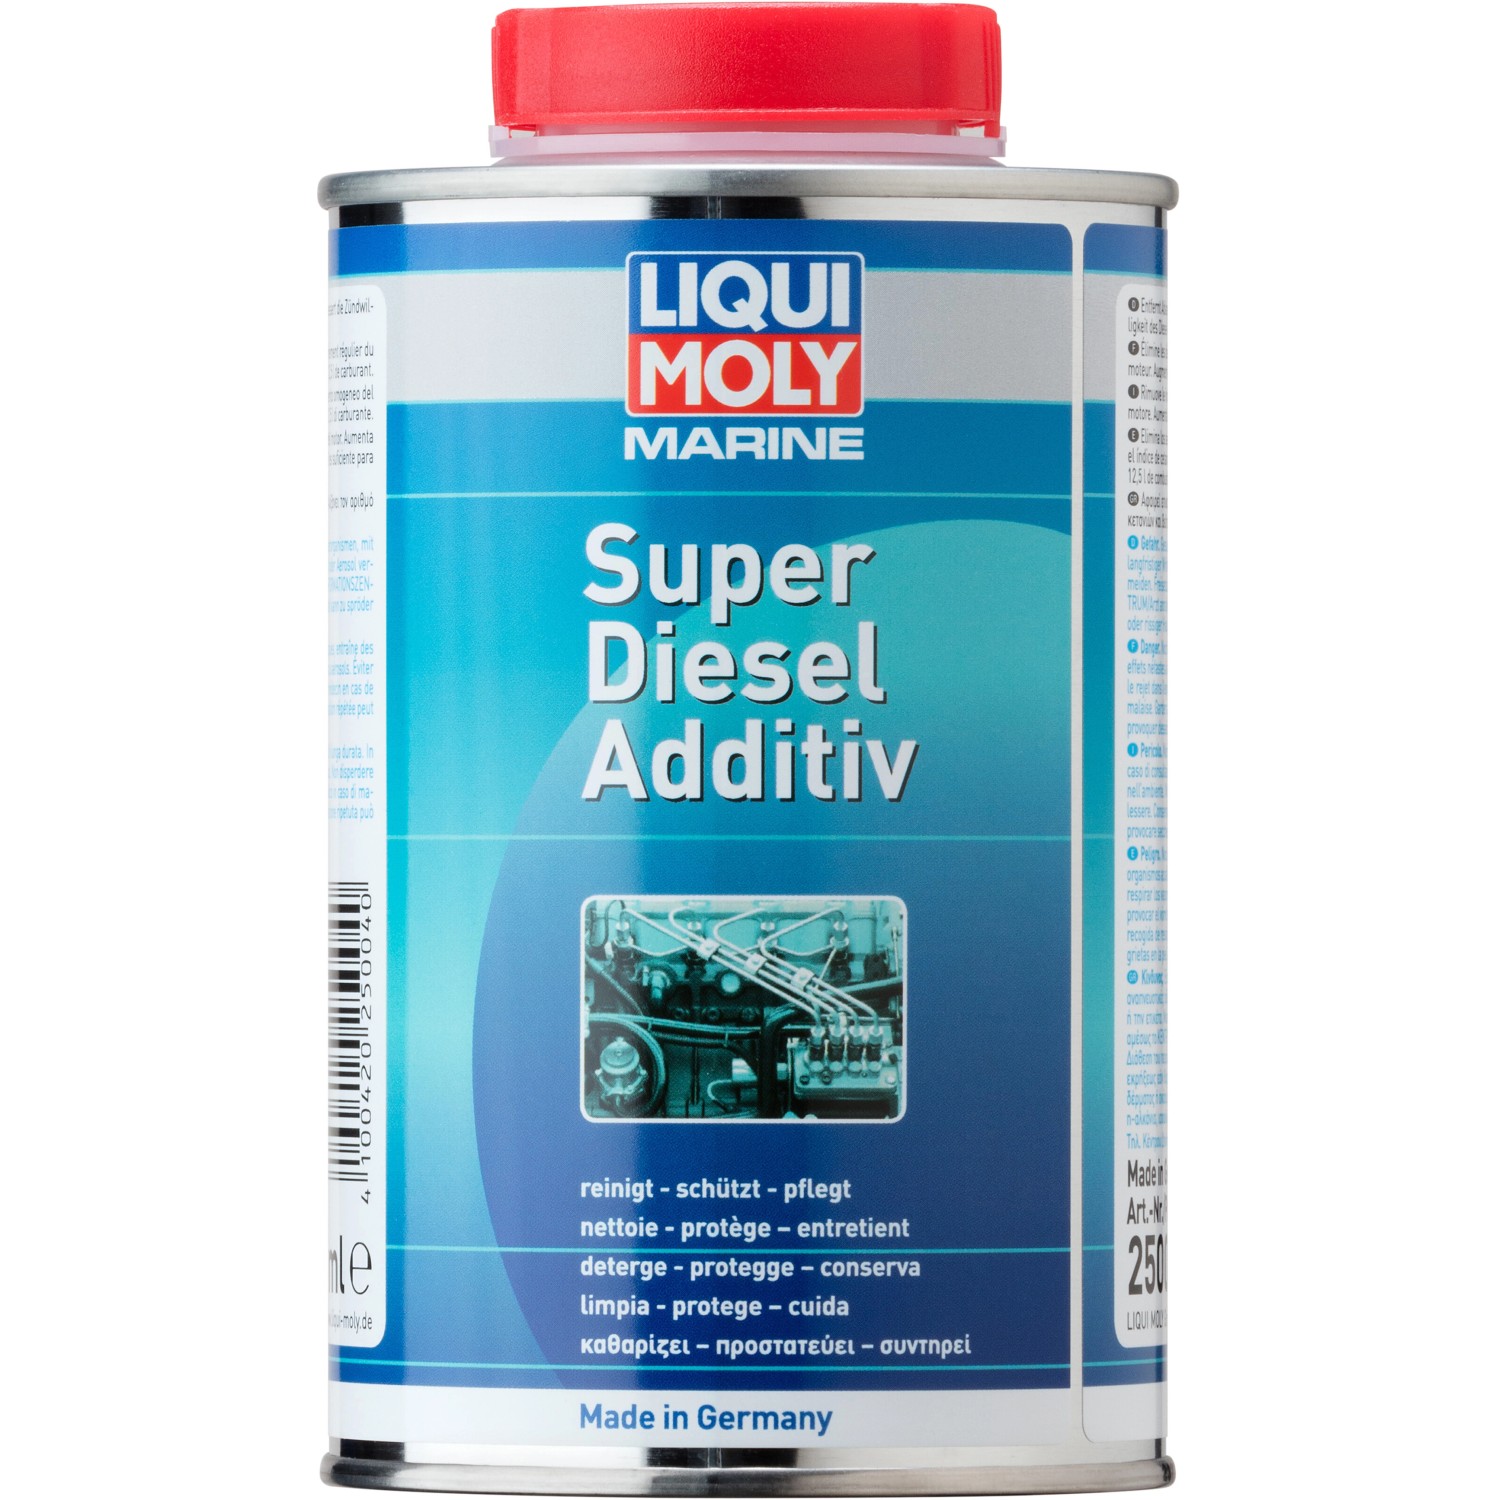 Liqui Moly Marine Super Diesel Additiv 500 ml kaufen bei OBI